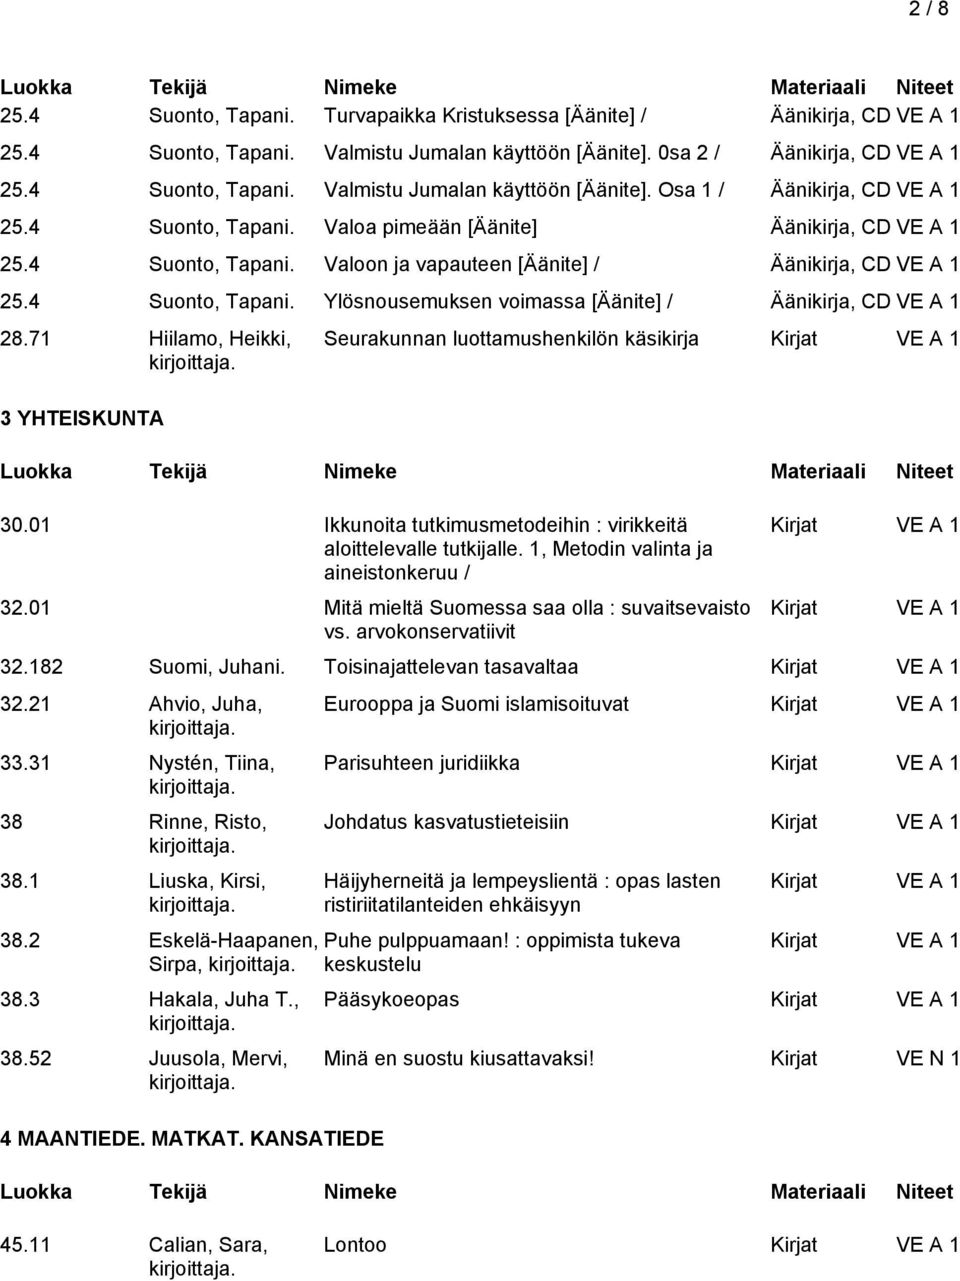 71 Hiilamo, Heikki, 3 YHTEISKUNTA Seurakunnan luottamushenkilön käsikirja 30.01 Ikkunoita tutkimusmetodeihin : virikkeitä aloittelevalle tutkijalle. 1, Metodin valinta ja aineistonkeruu / 32.